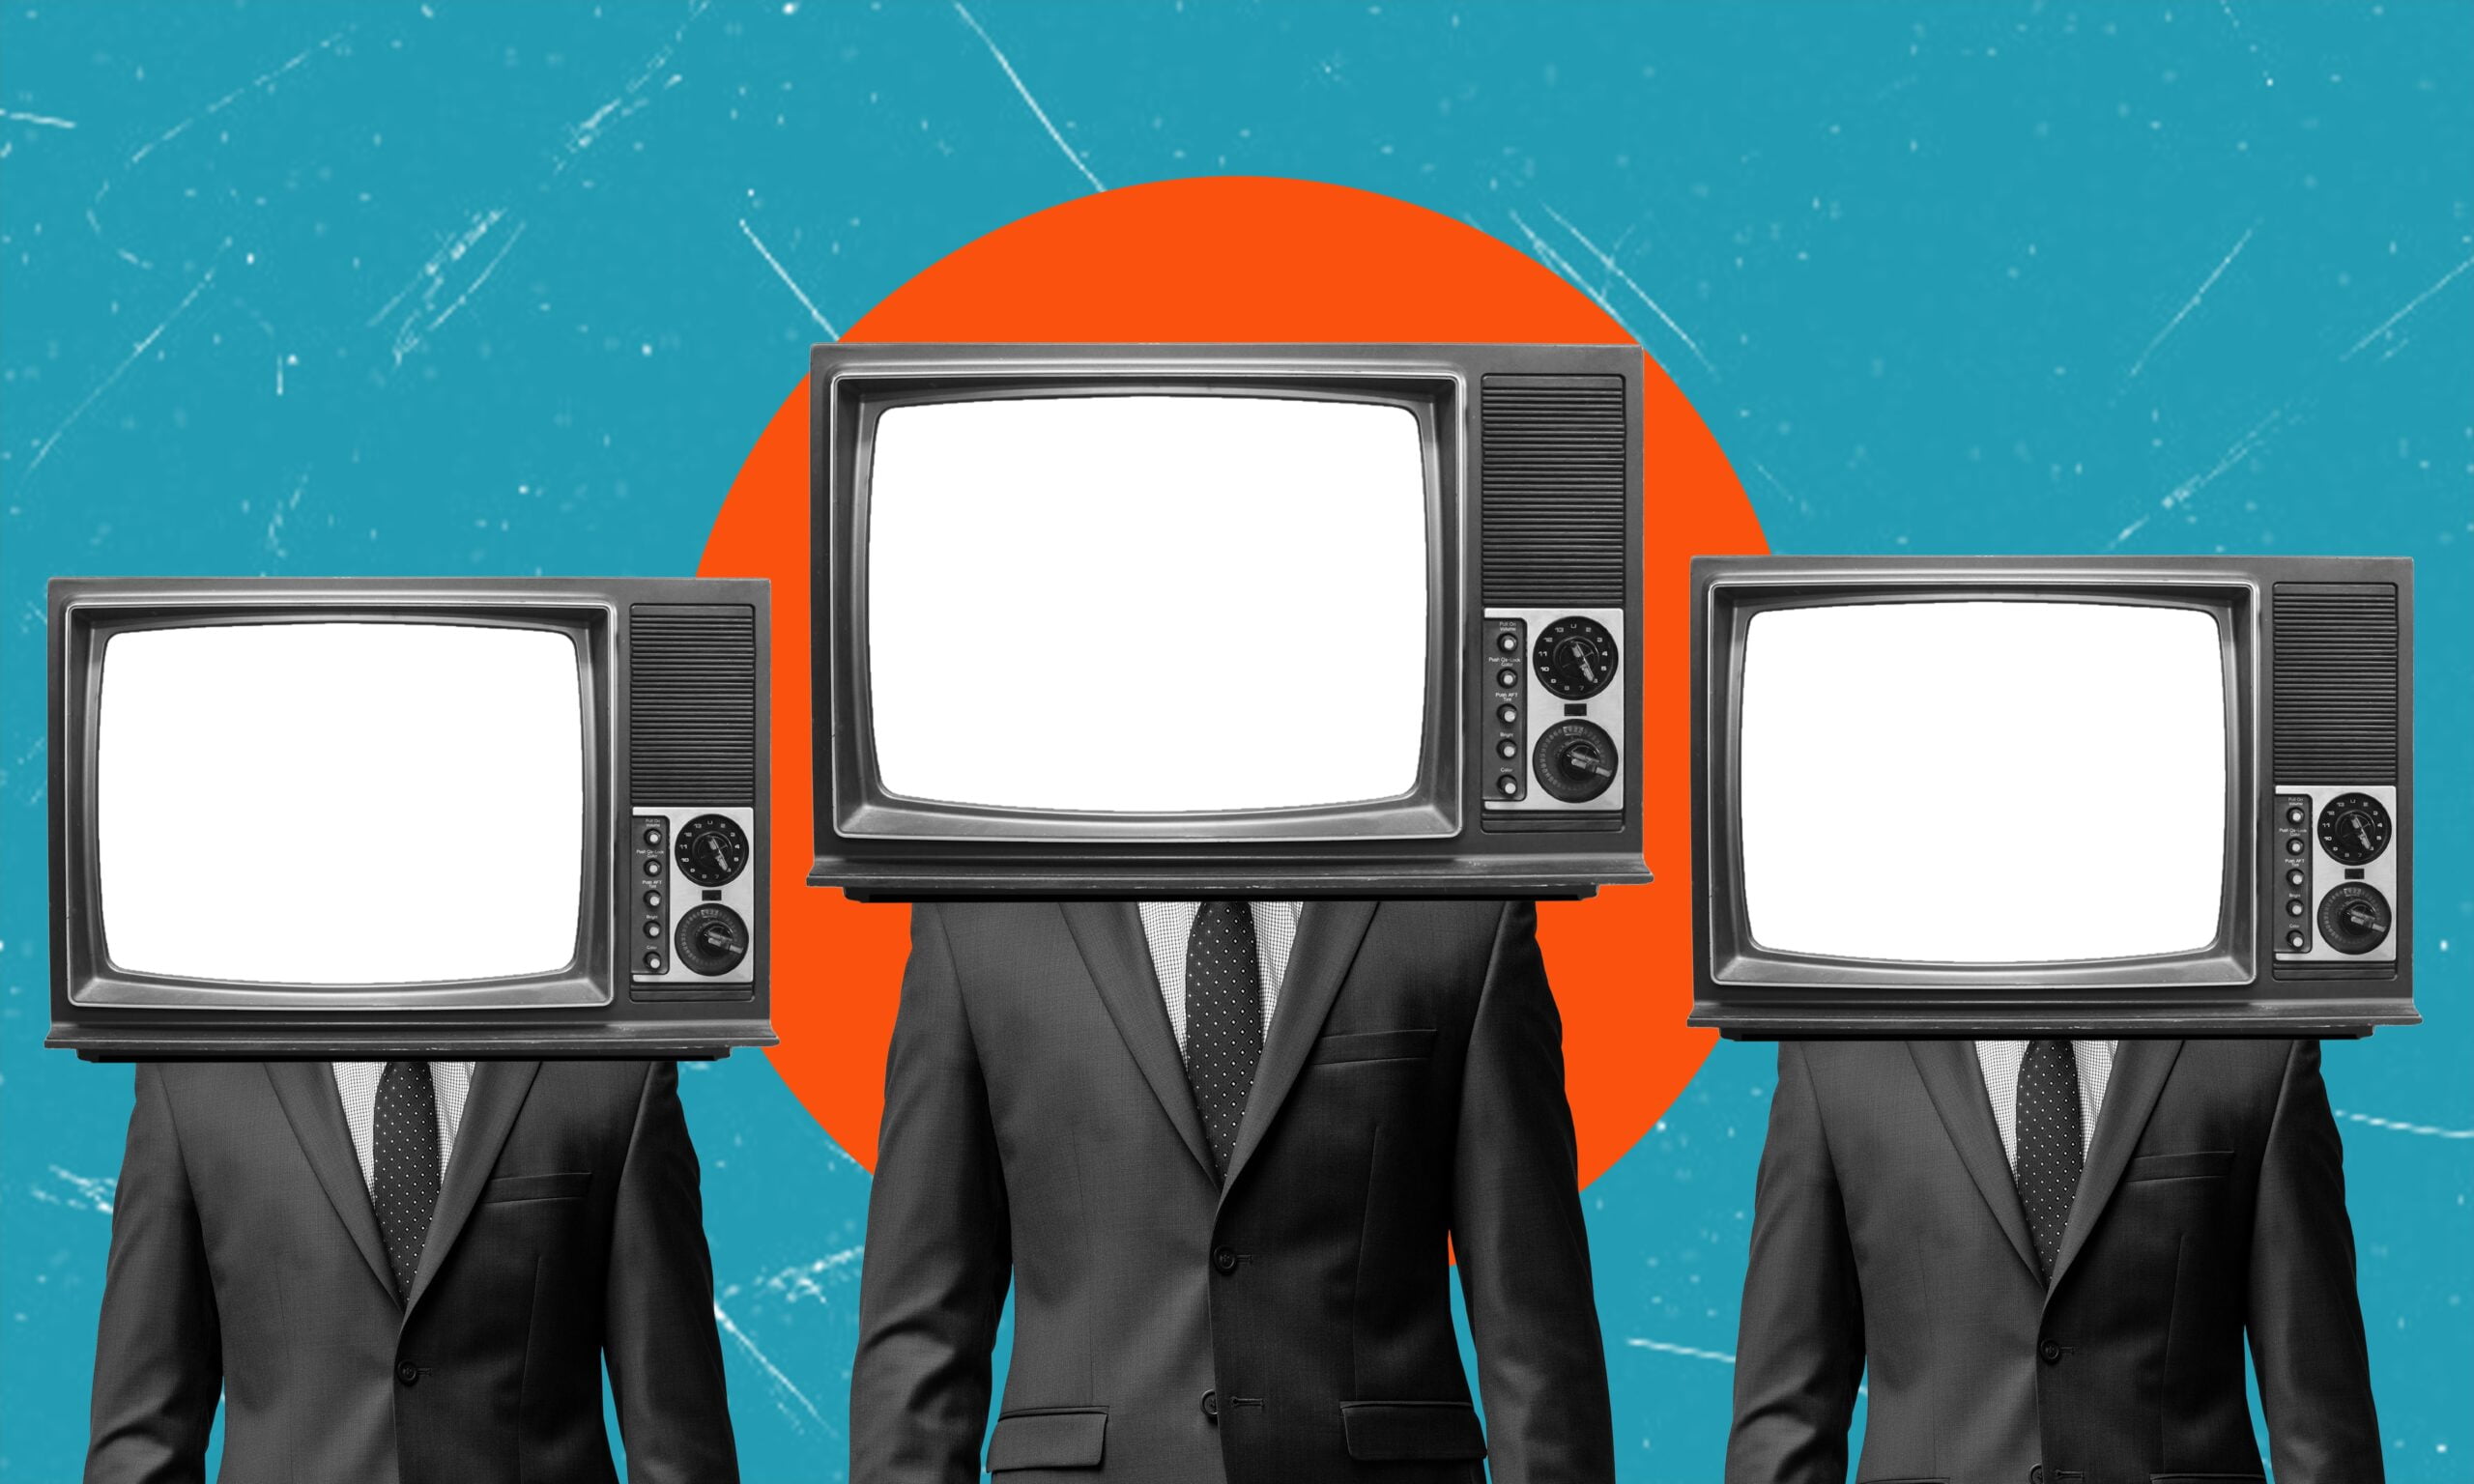 Trzy postacie w garniturach z głowami w kształcie telewizorów na tle niebieskiego i pomarańczowego koła.